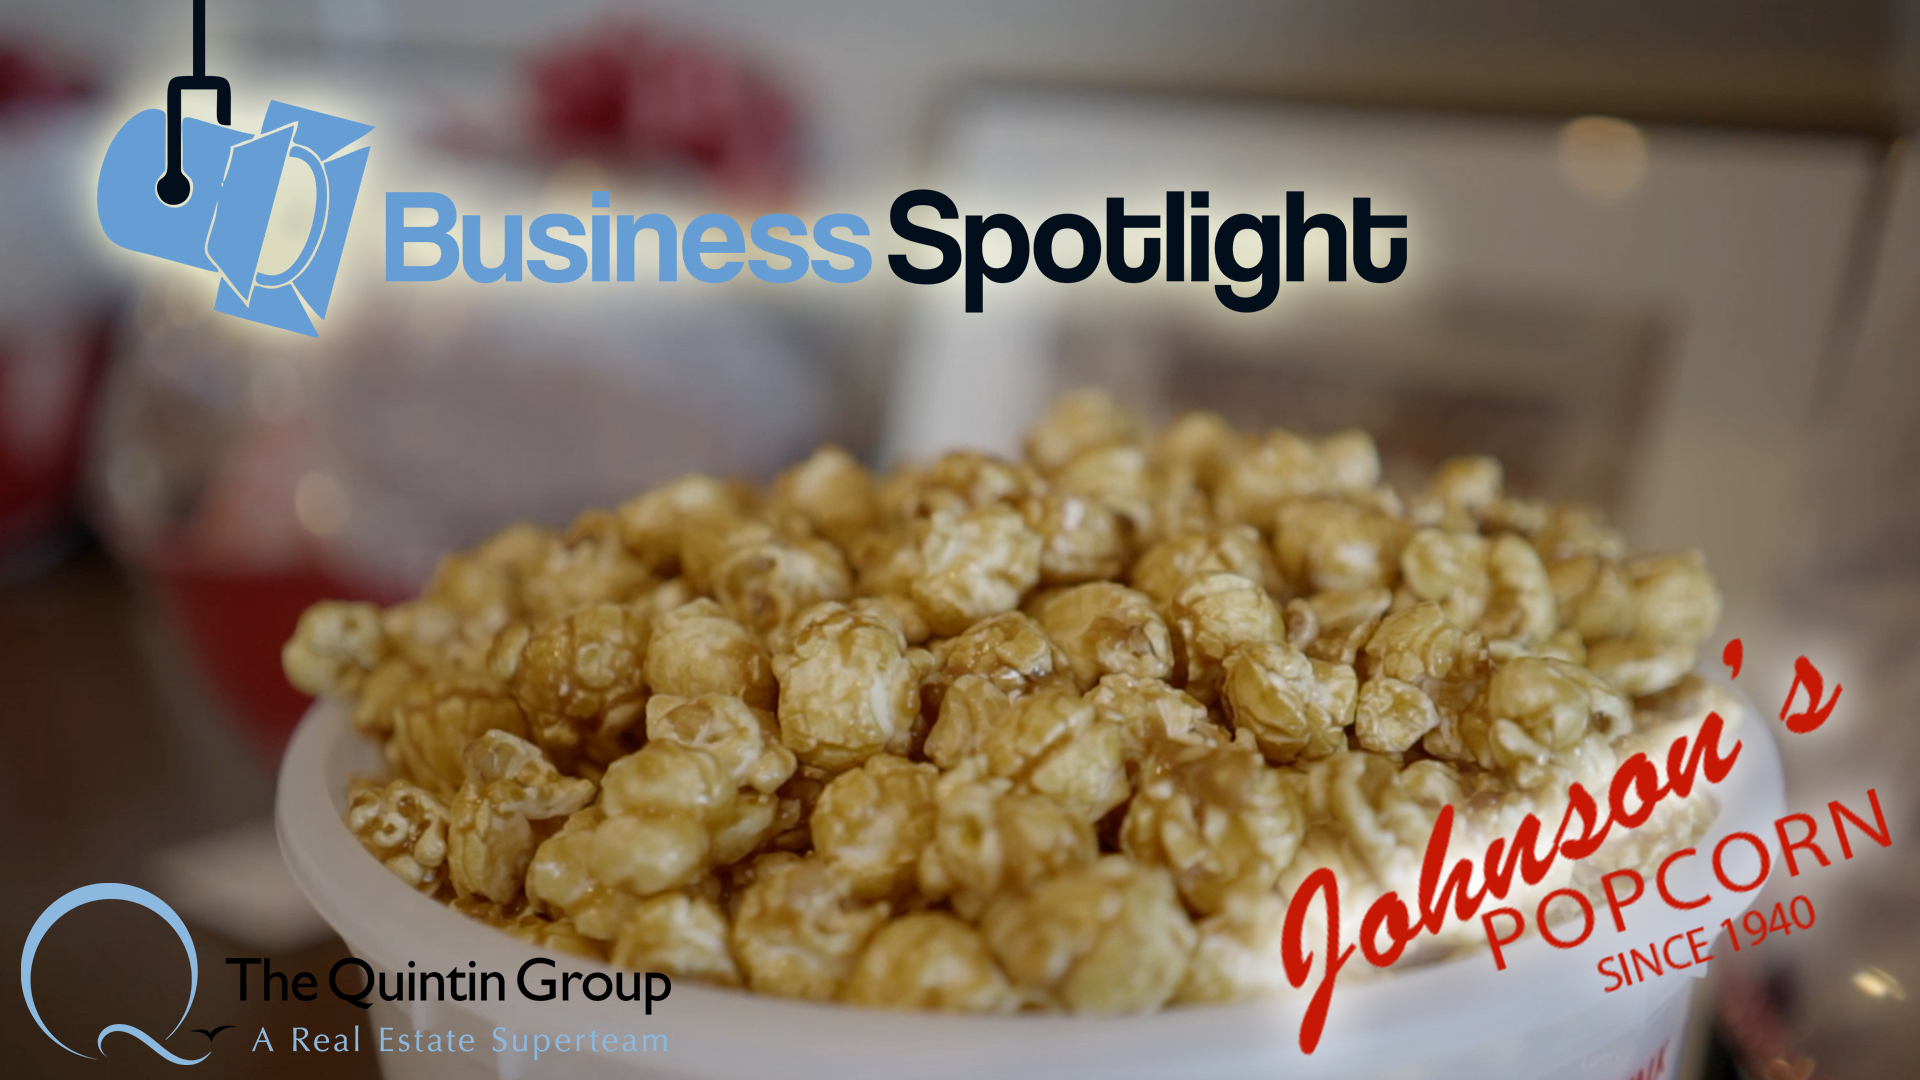 Business Spotlight: Johnson's Popcorn